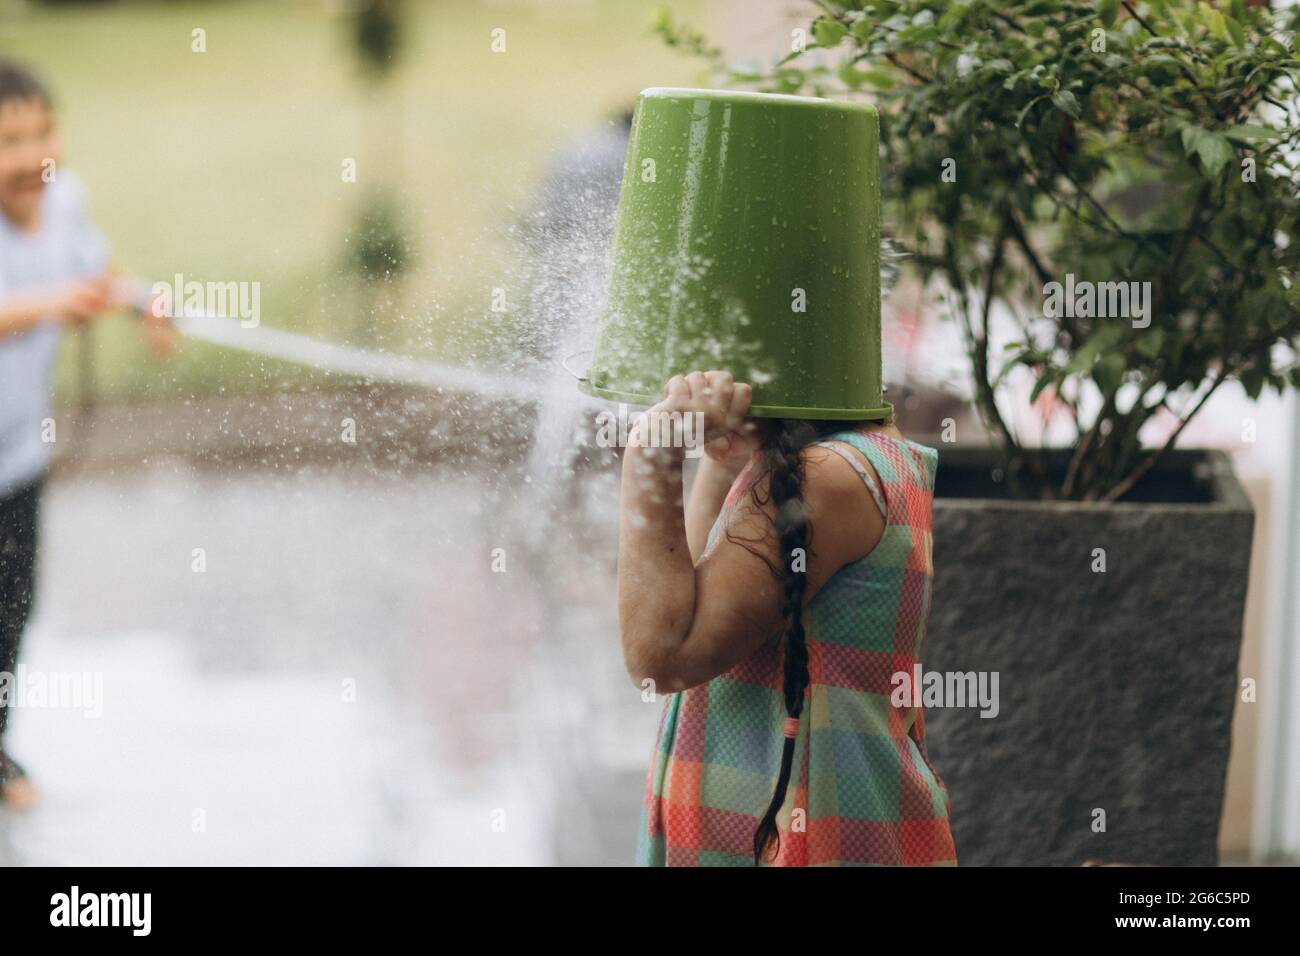 Juegos de verano con manguera de agua en el jardín Fotografía de stock -  Alamy